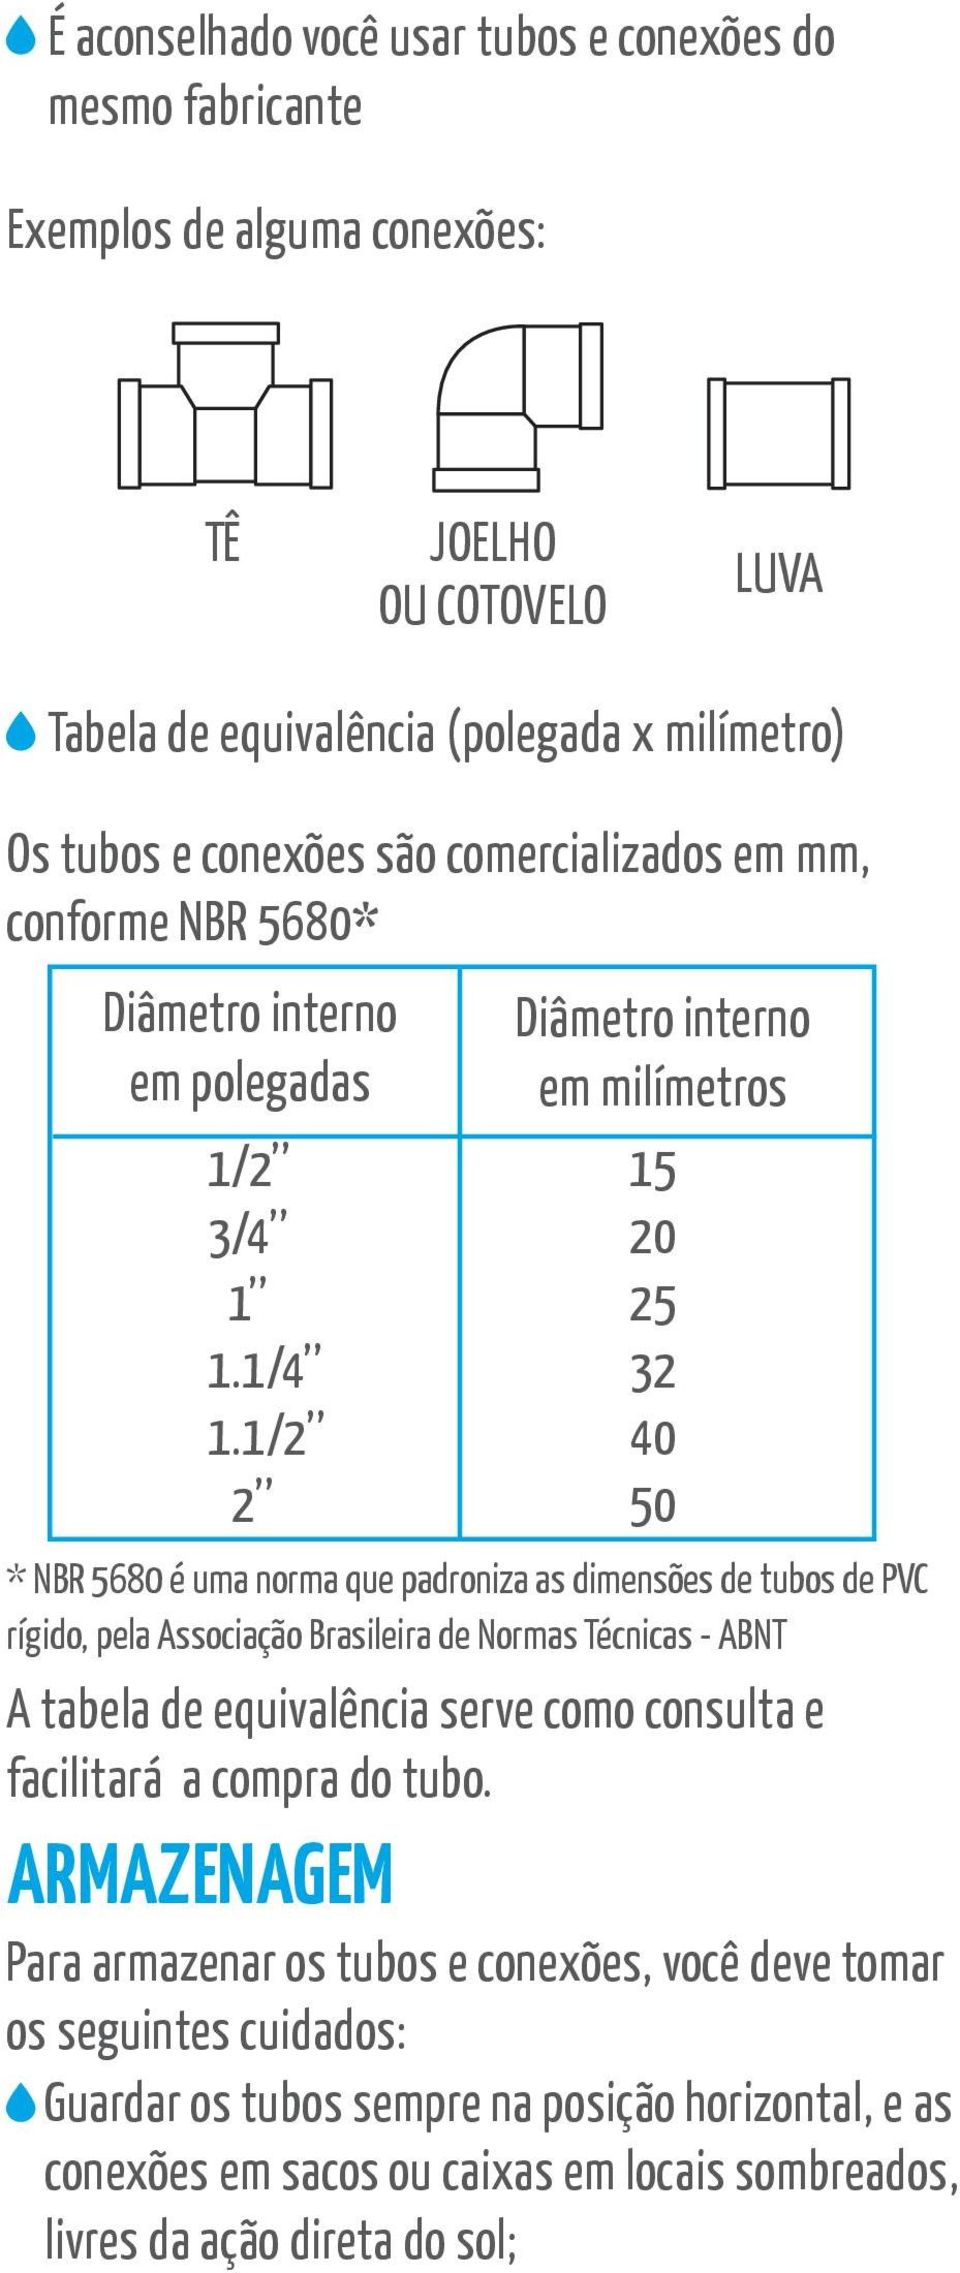 1/2 2 Diâmetro interno em milímetros 15 20 25 32 40 50 * NBR 5680 é uma norma que padroniza as dimensões de tubos de PVC rígido, pela Associação Brasileira de Normas Técnicas - ABNT A